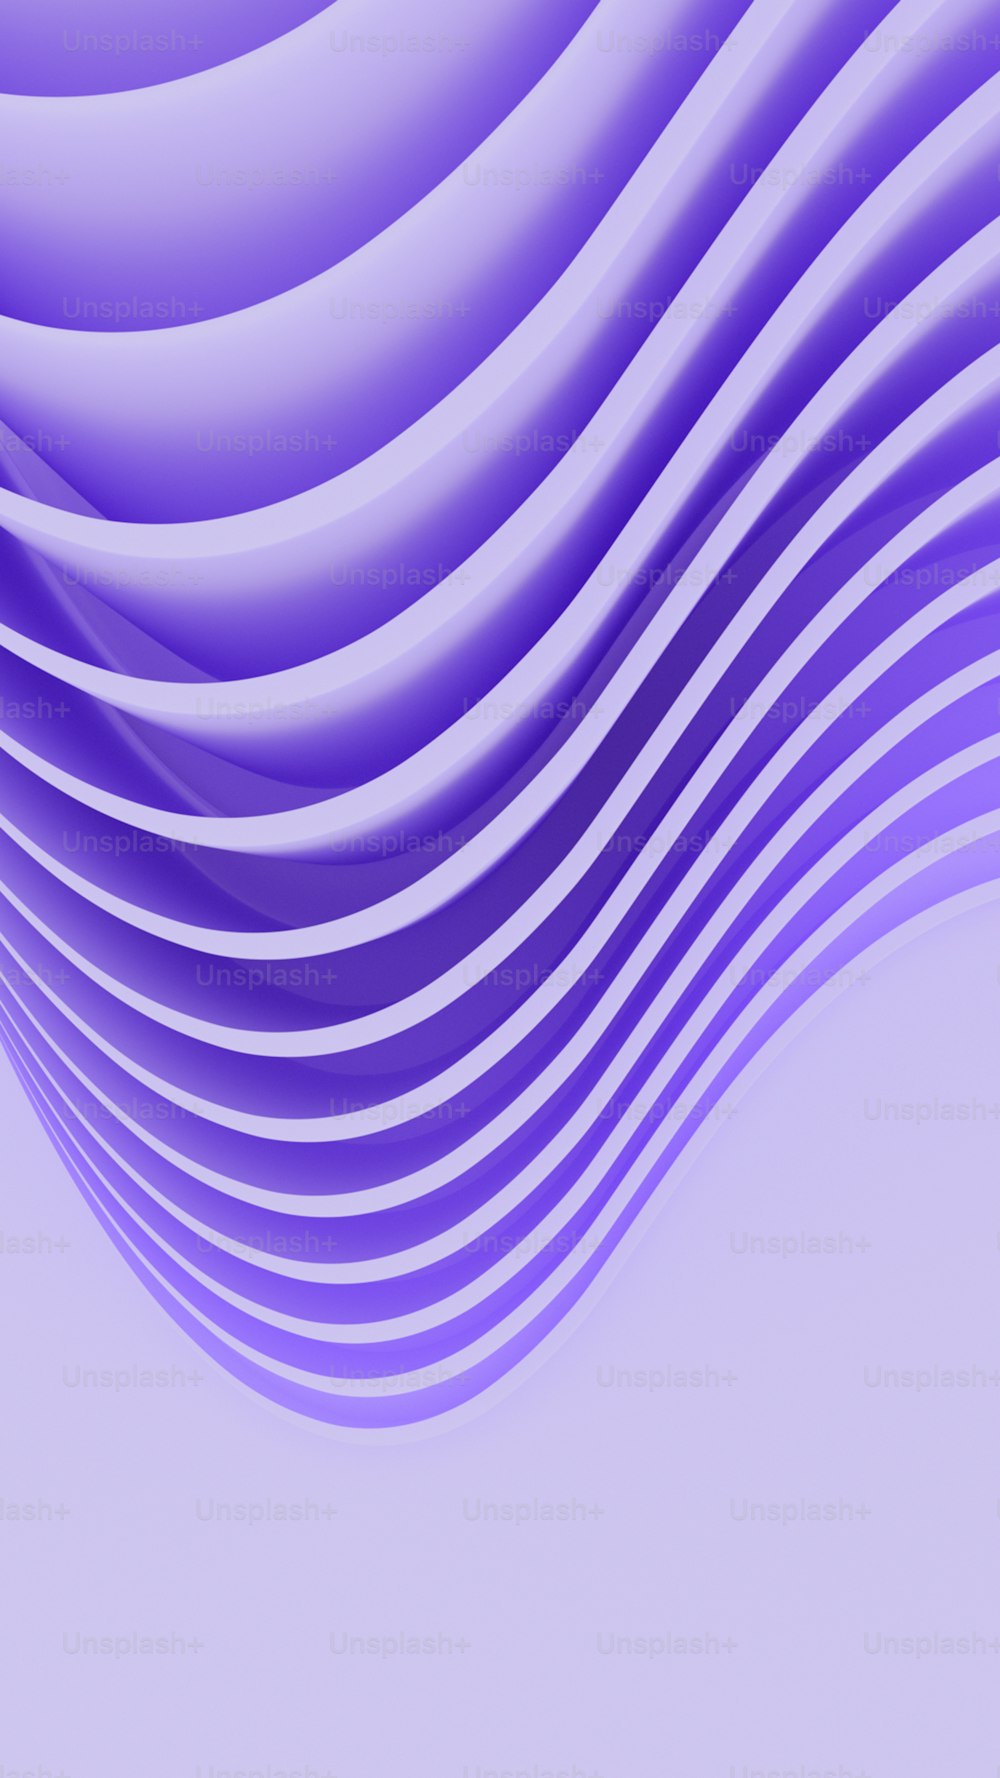 Ein abstrakter lila Hintergrund mit Wellenlinien